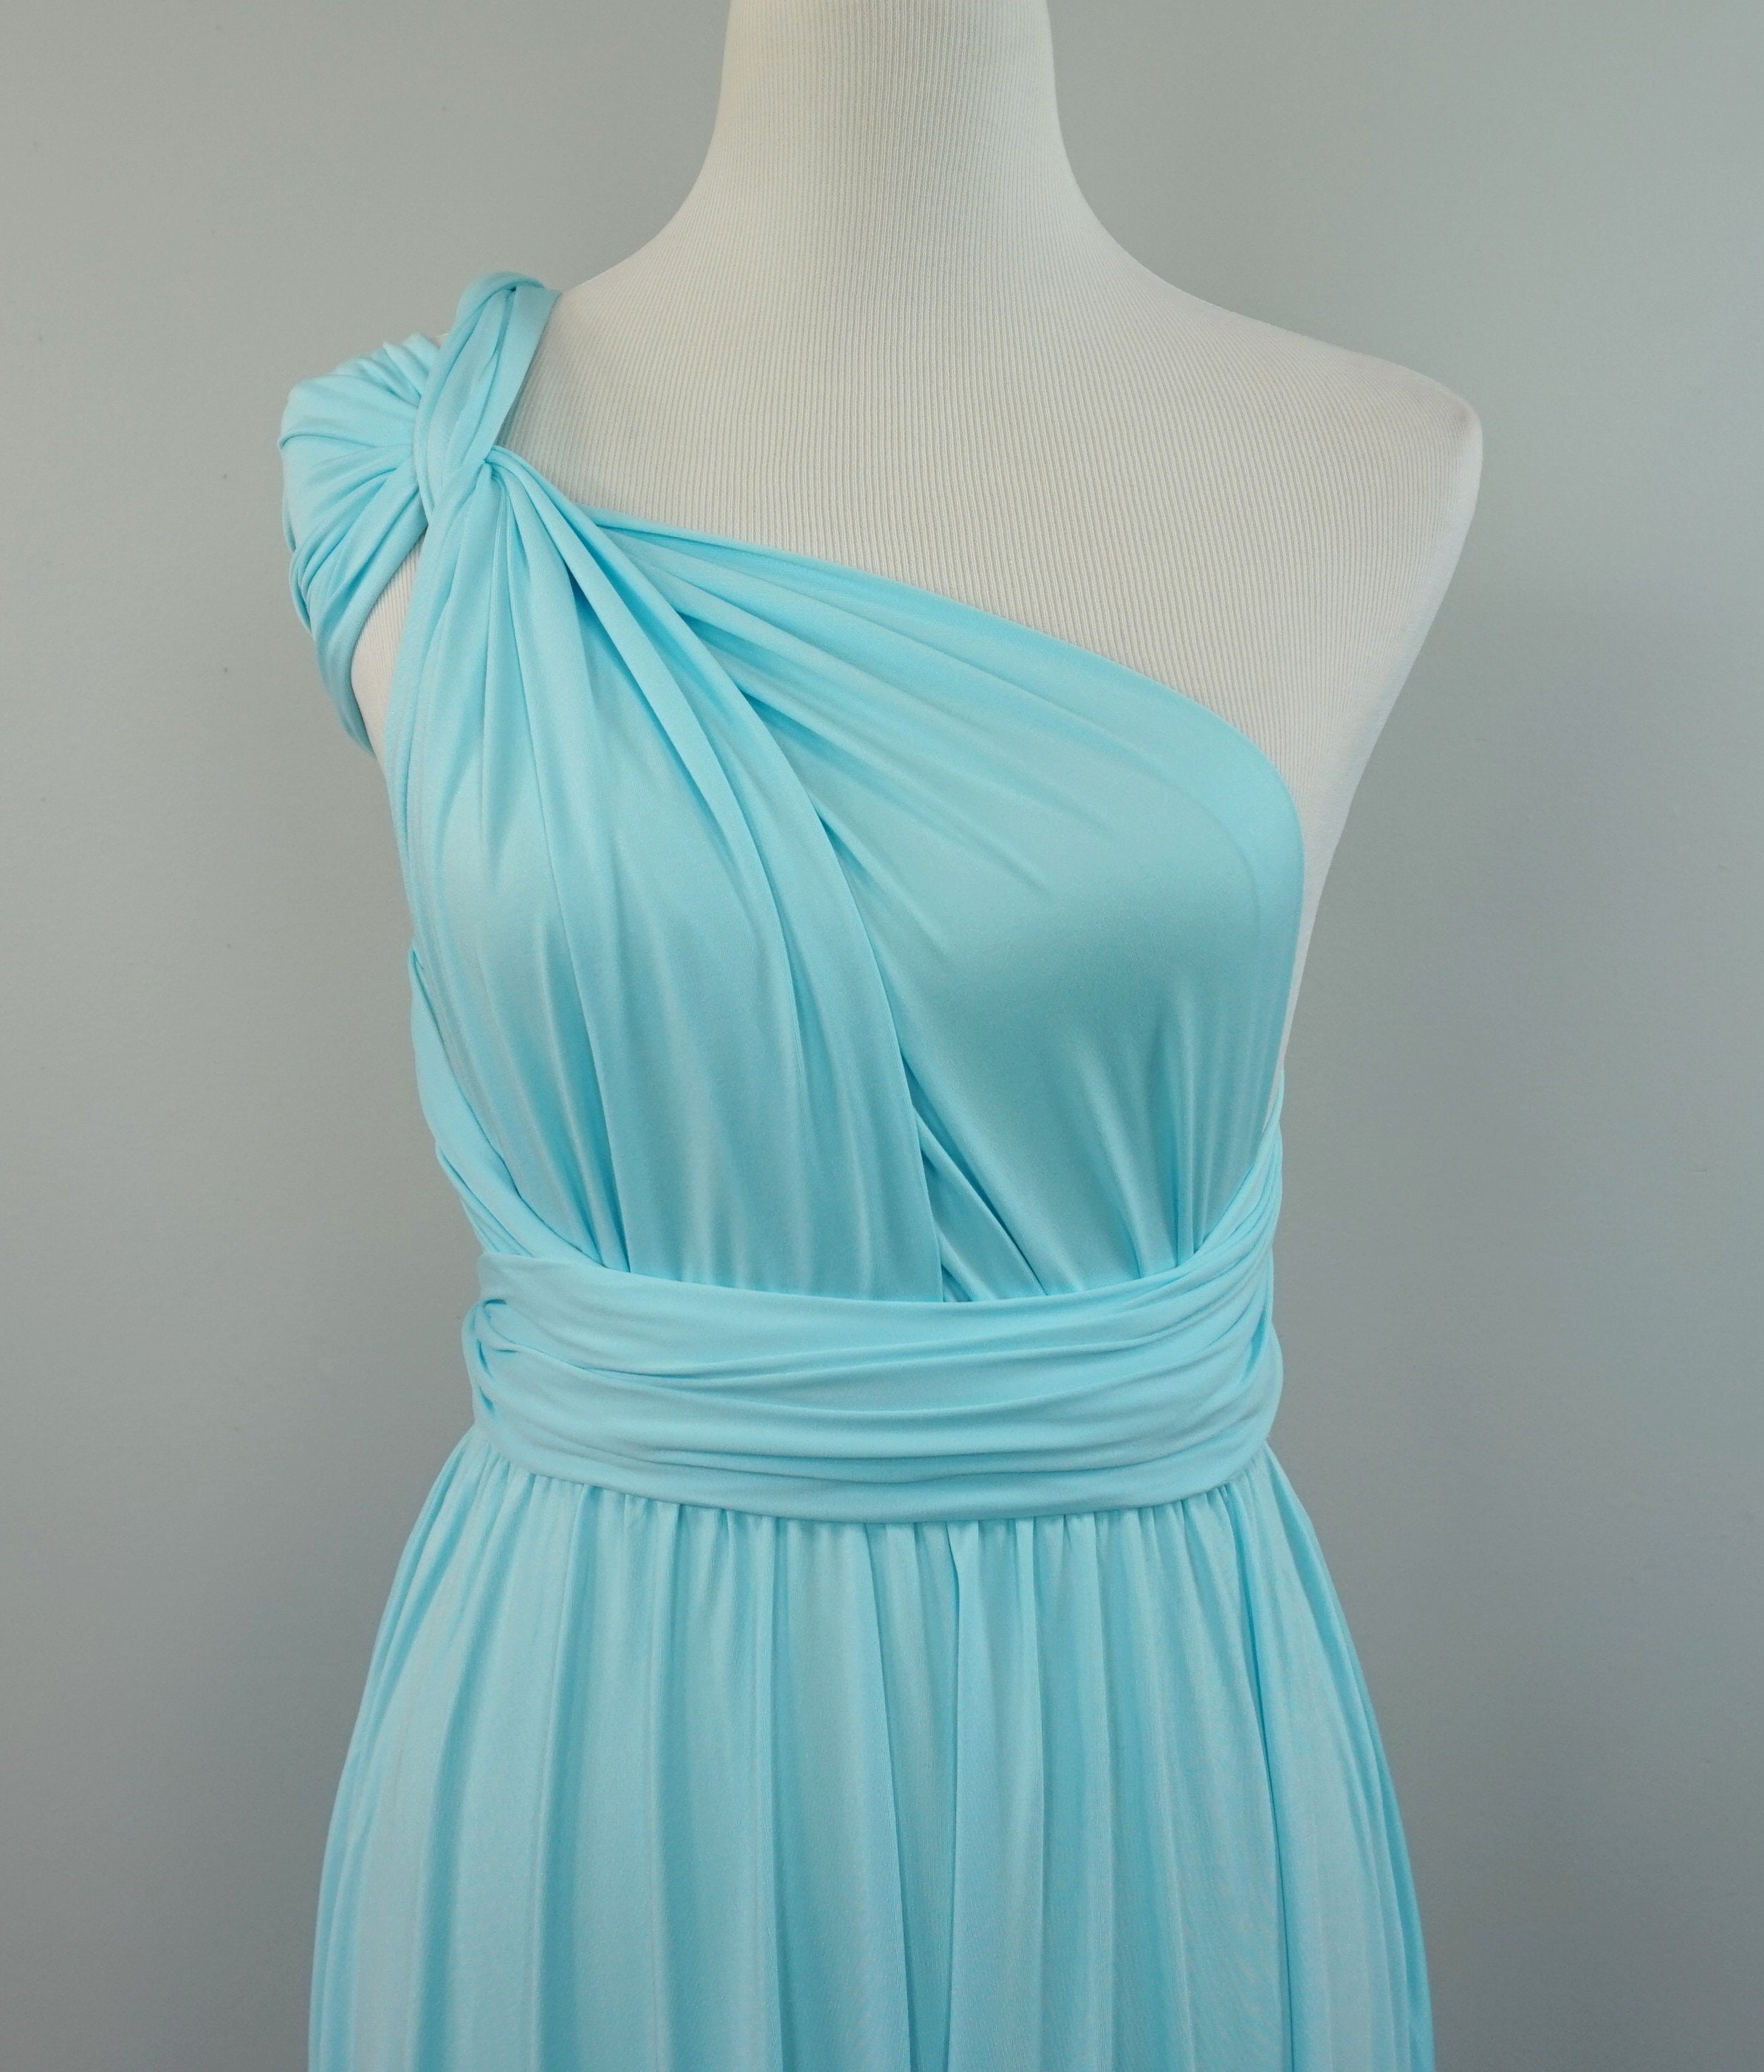 Aqua blue dress aqua blue bridesmaid dress aqua blue prom | Etsy